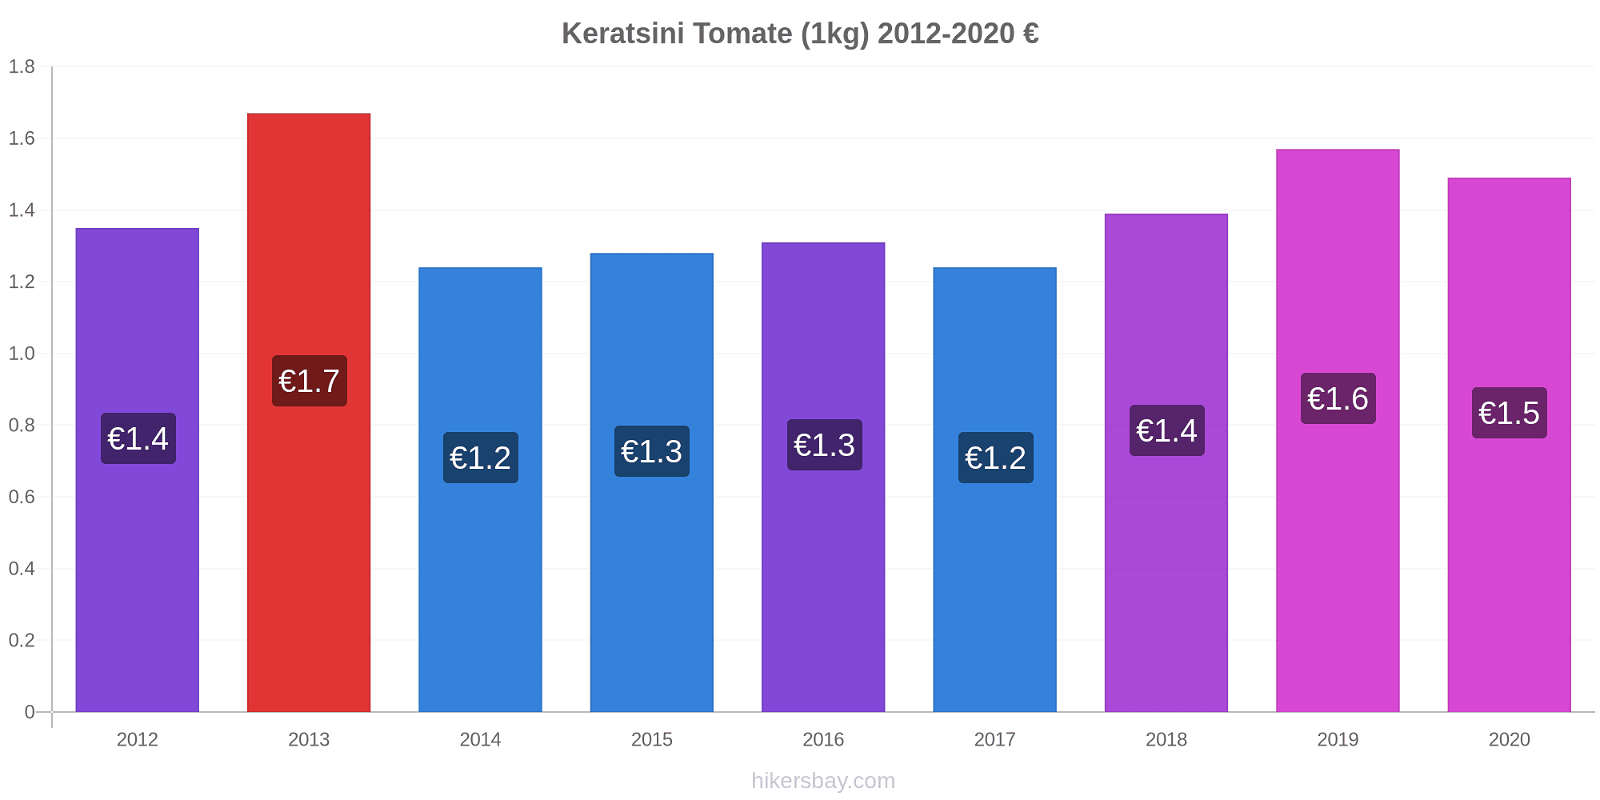 Keratsini cambios de precios Tomate (1kg) hikersbay.com